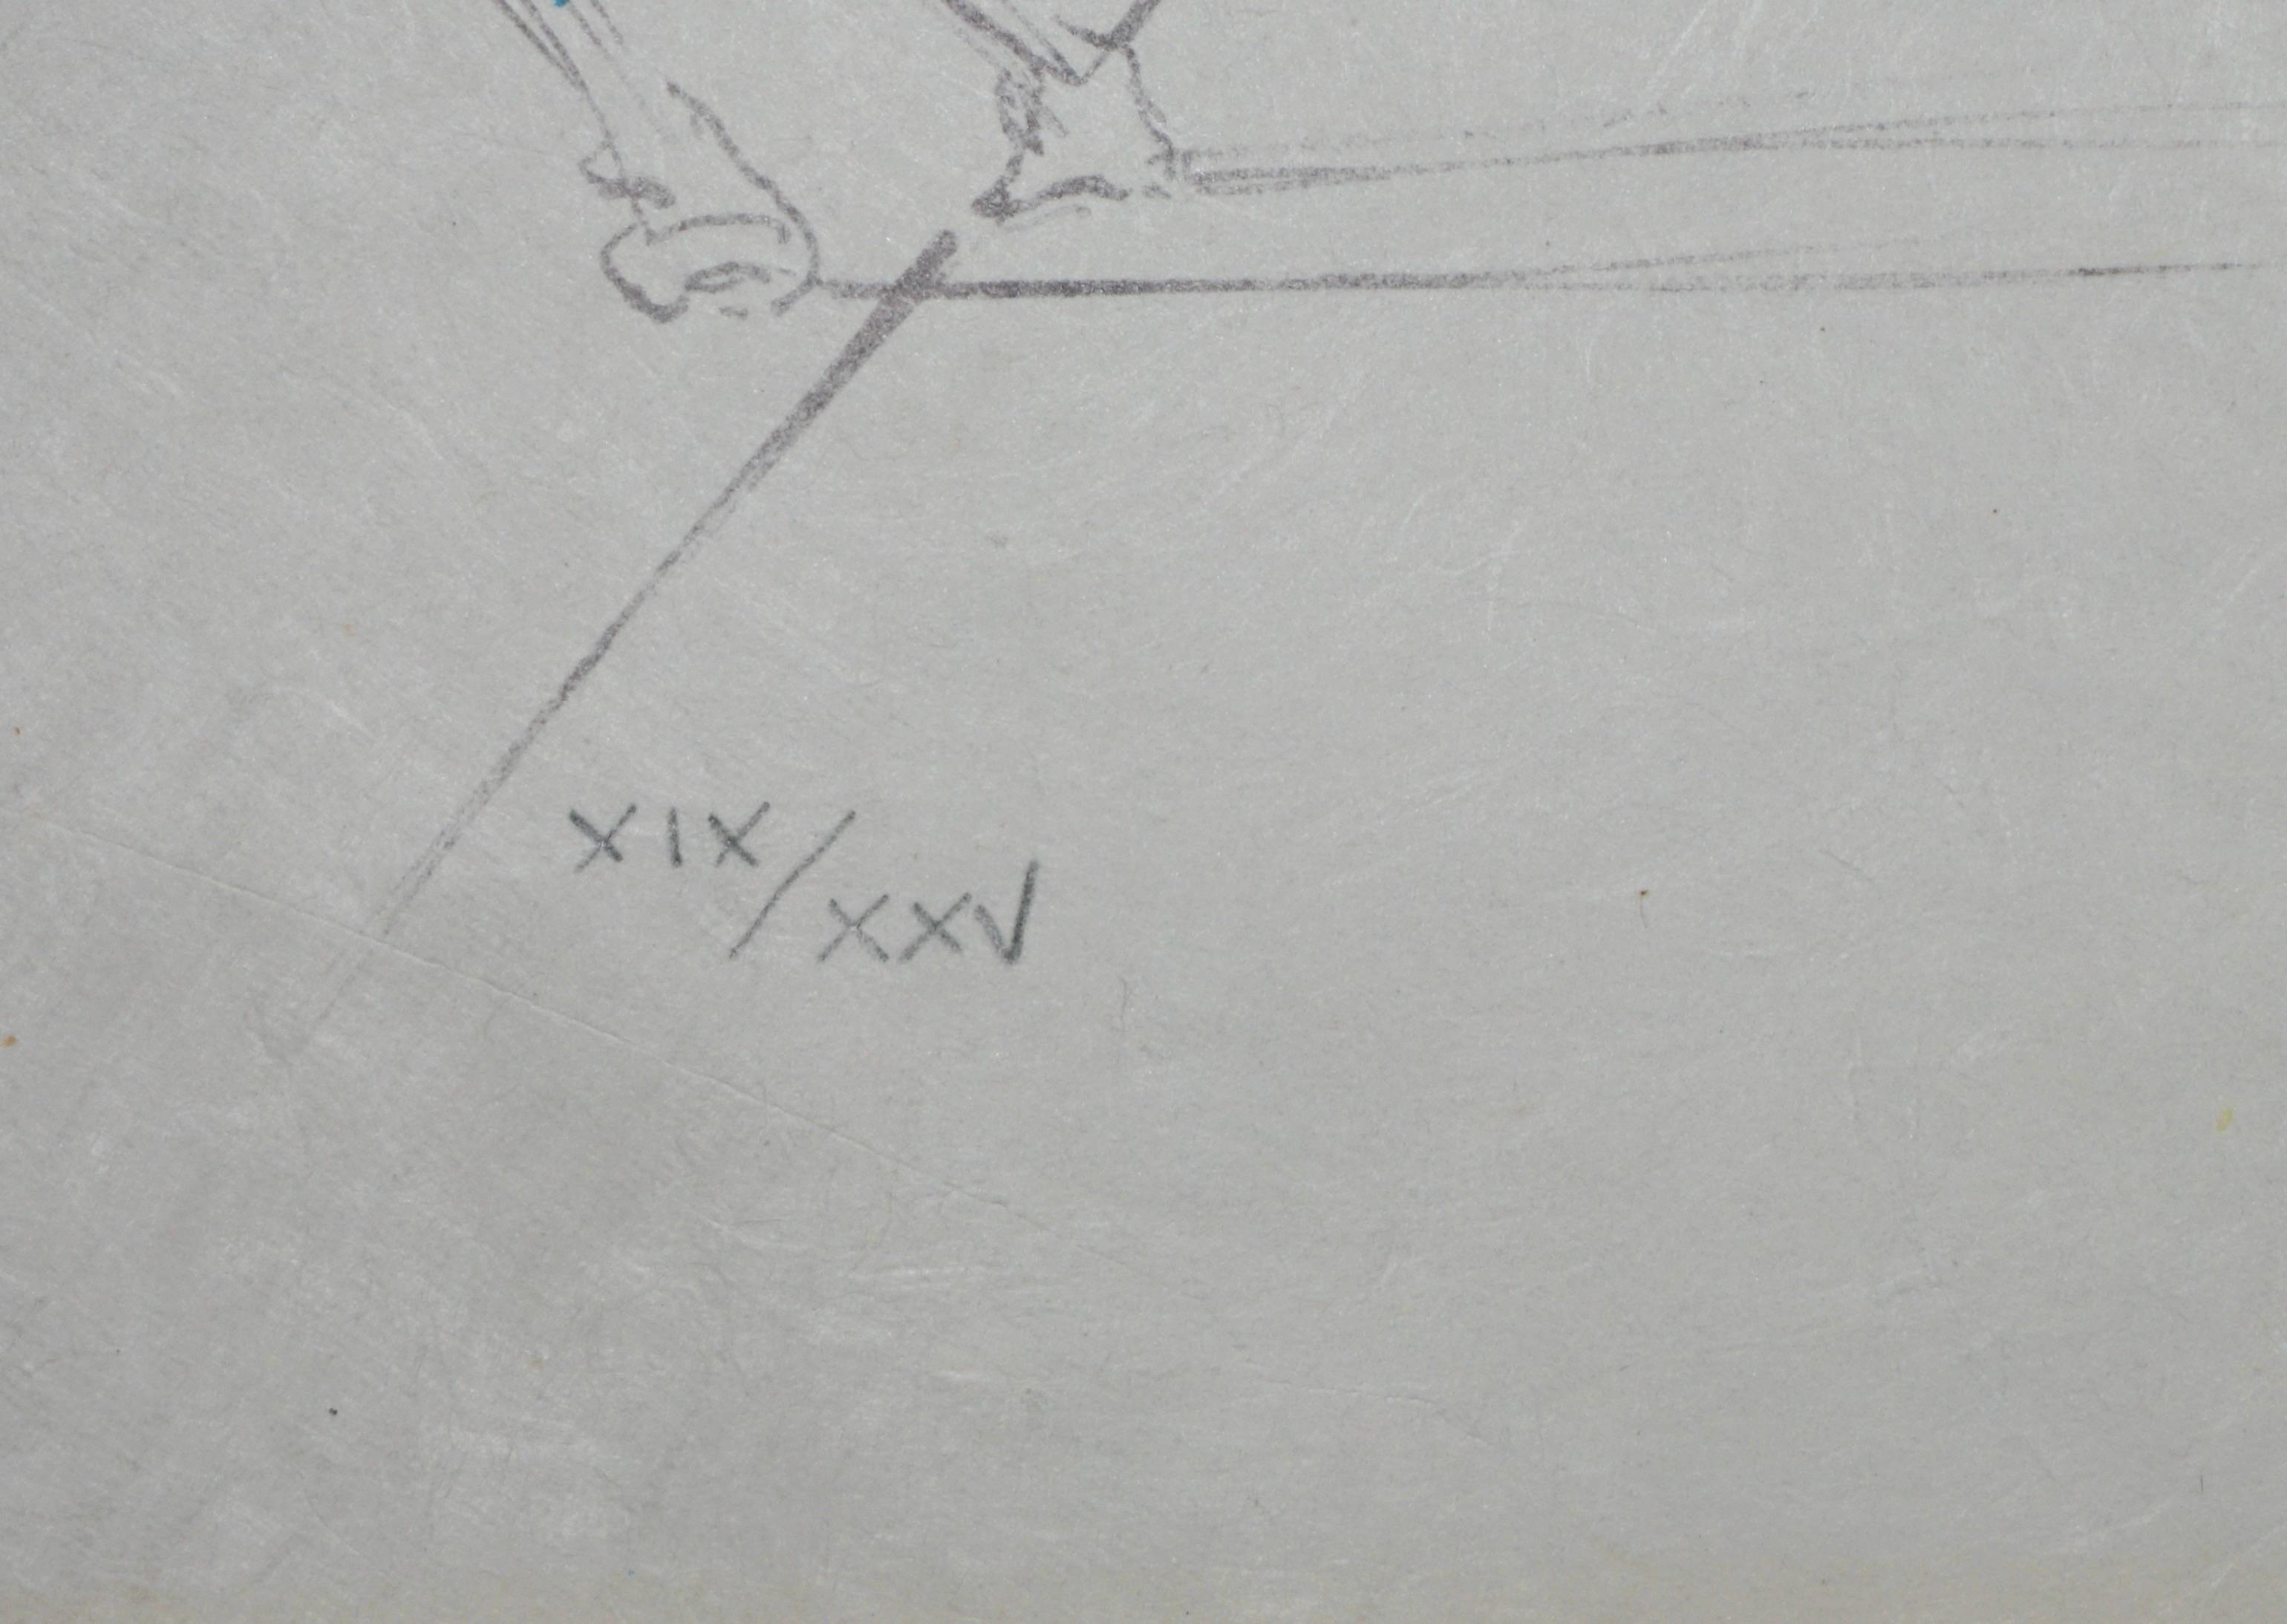 ARTIST: Salvador Dali

TITLE: Le Sacre du Printemps

MEDIUM: Lithograph on Japon Paper

SIGNED: Hand Signed 

EDITION NUMBER:  XIX/XXV

MEASUREMENTS: 22.25